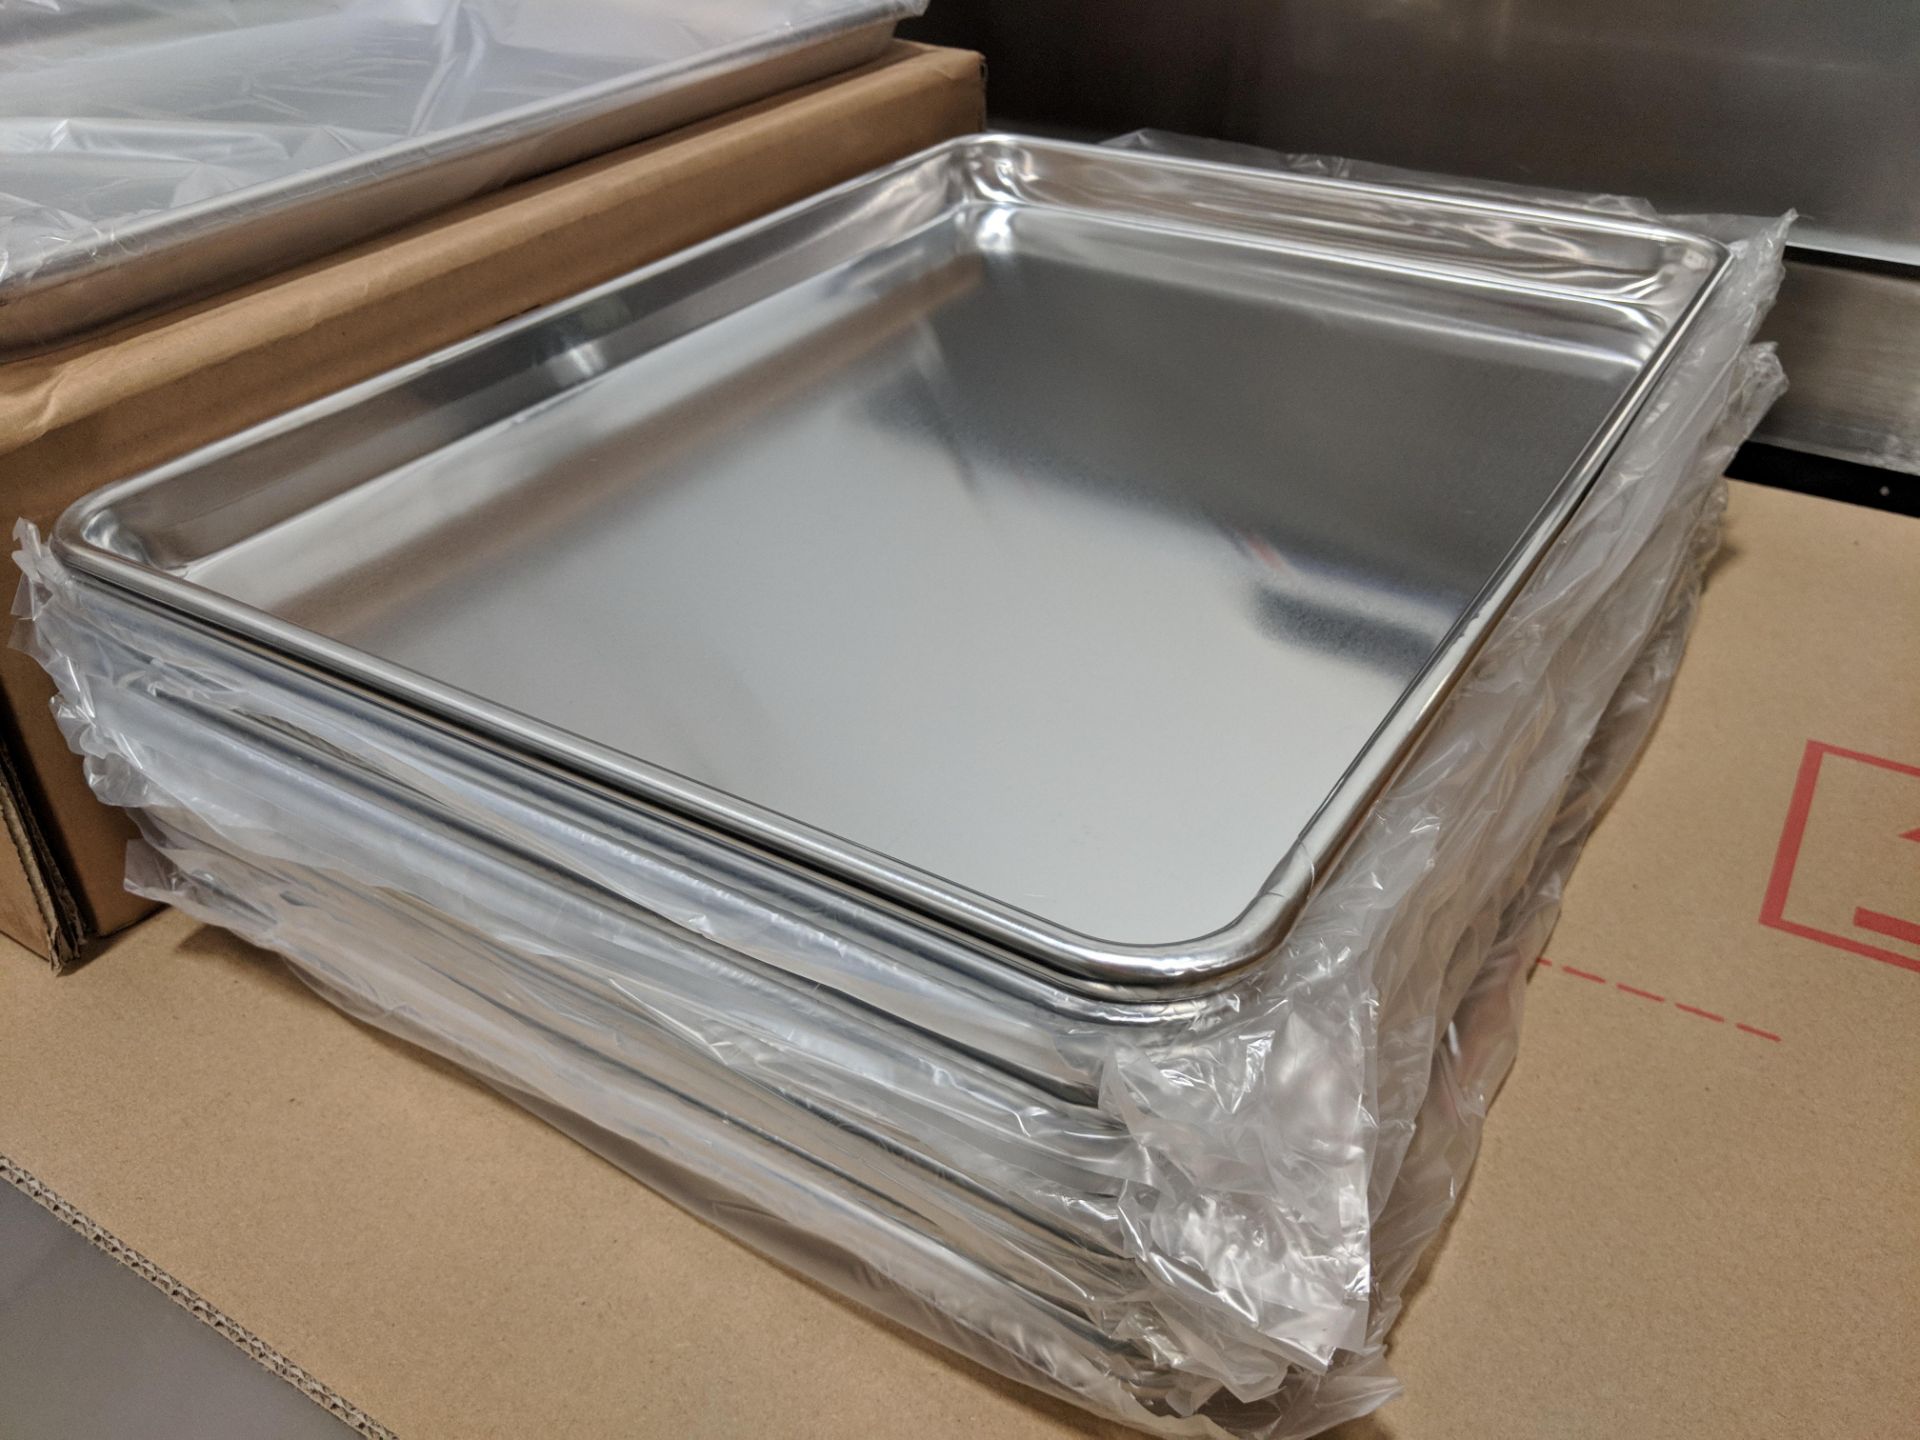 13" x 18" Half Size Size Aluminum Bun Pans - Case of 12 - Image 2 of 4